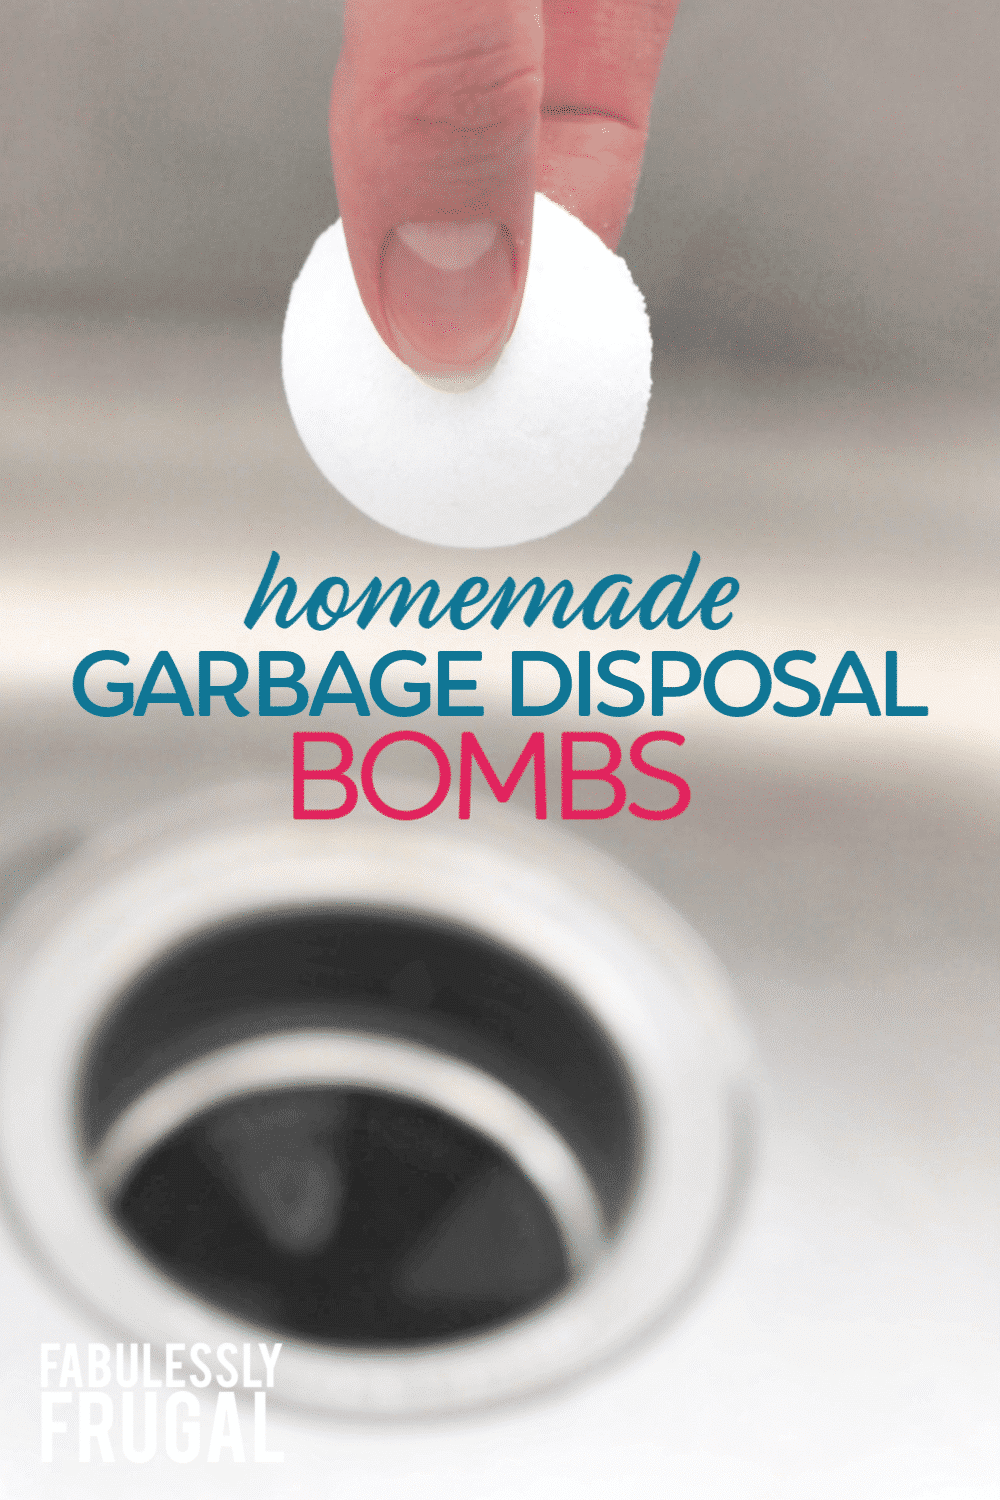 Homemade garbage disposal bombs